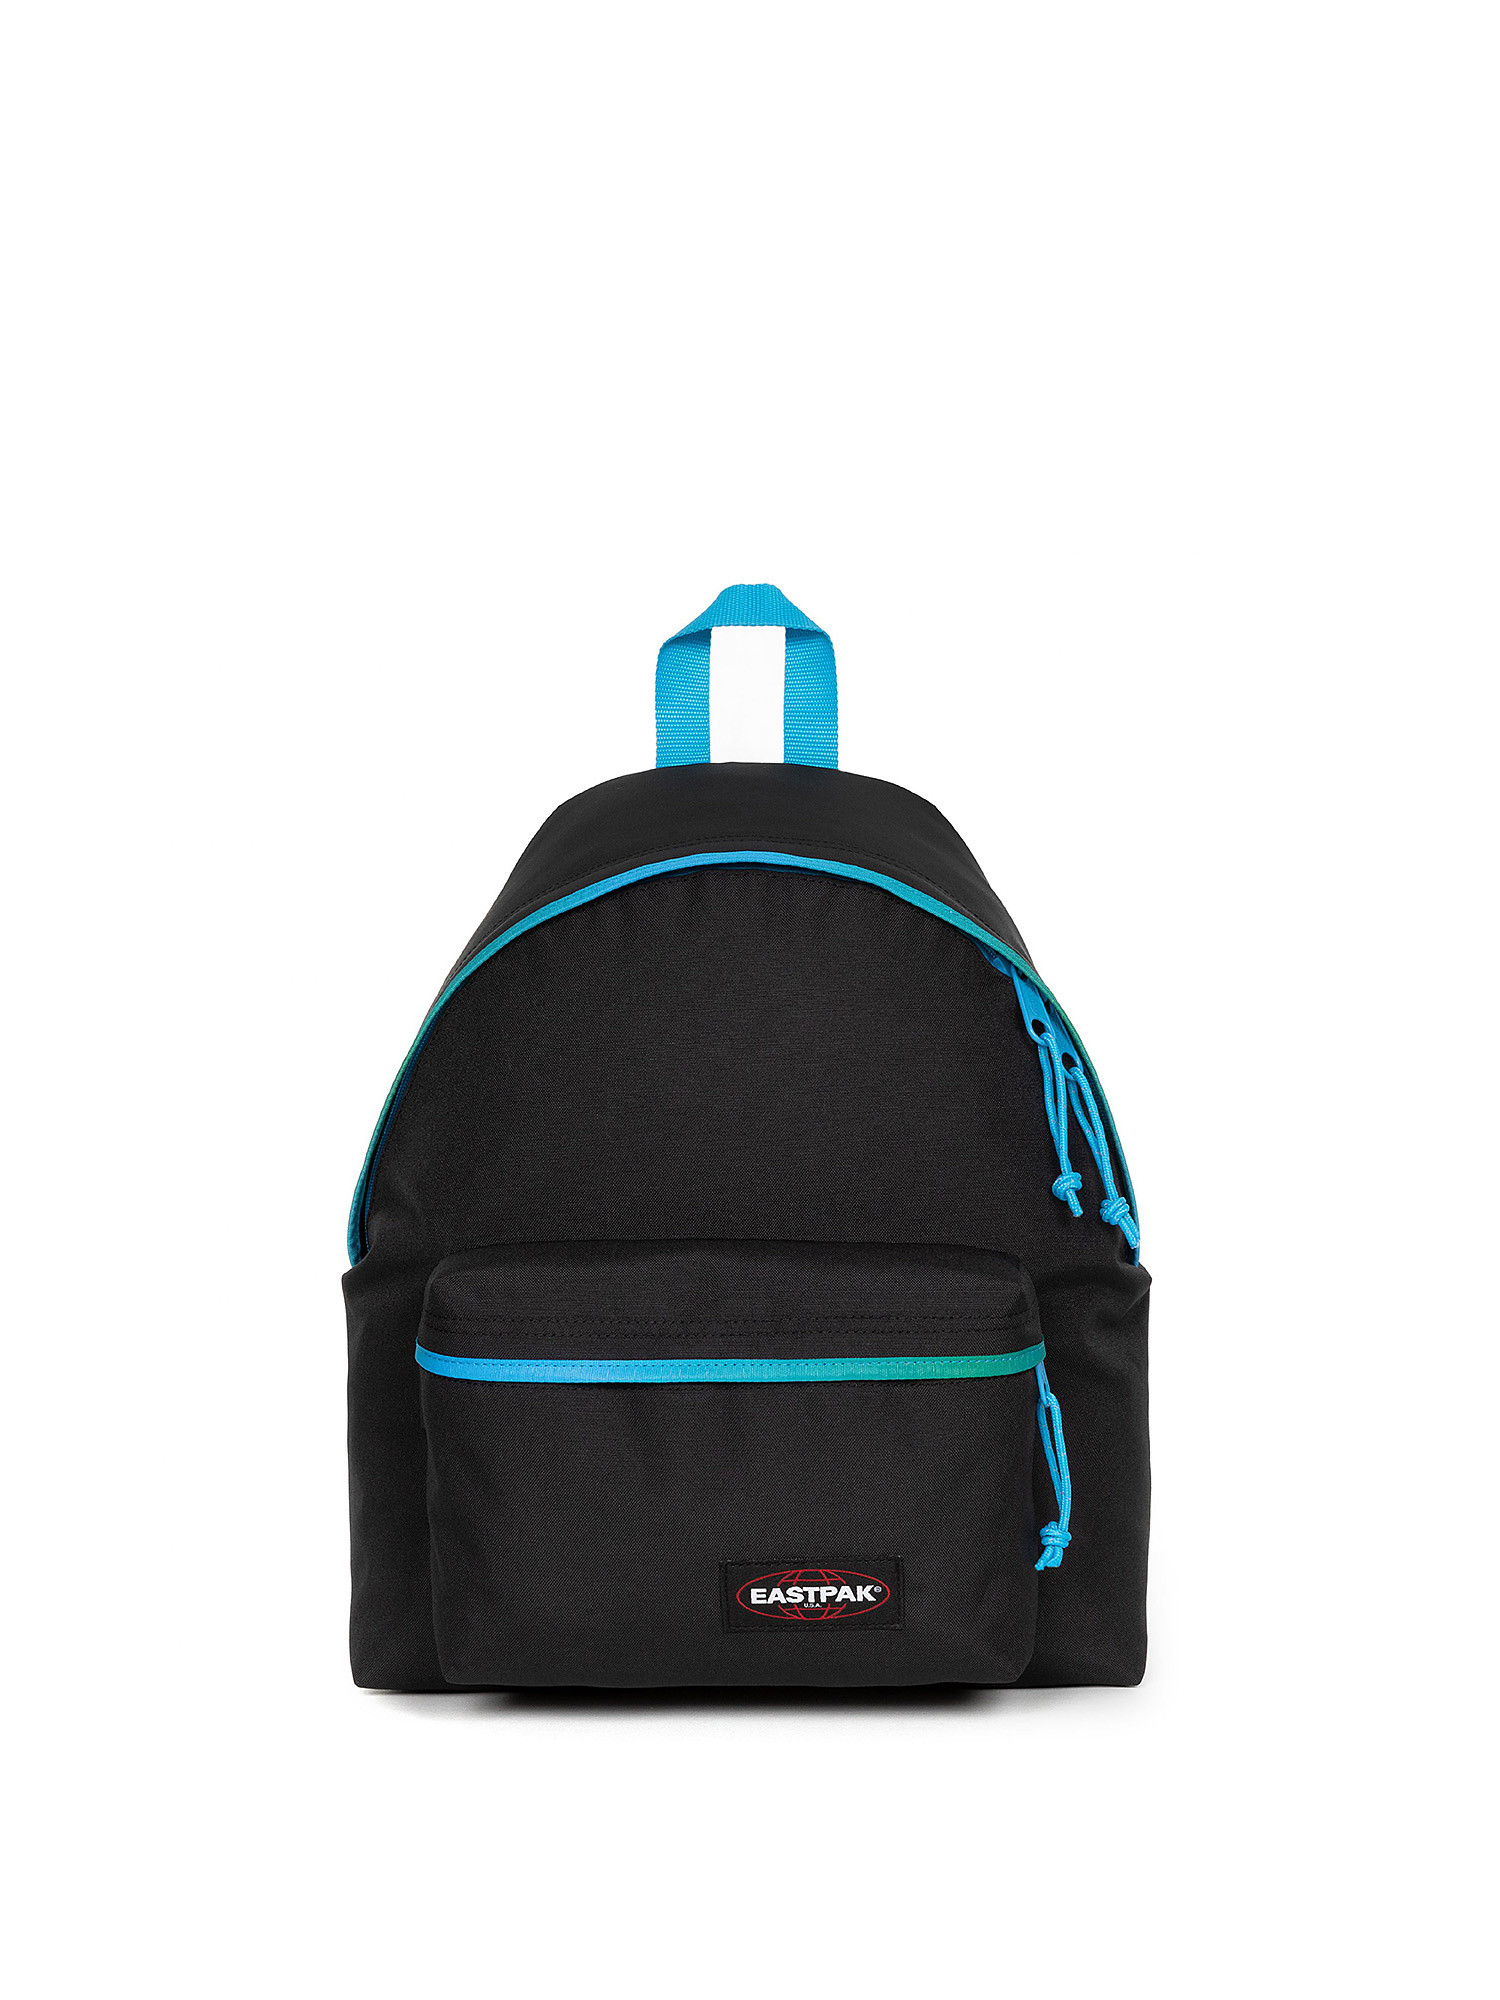 Eastpak - Padded Pak'r Backpack Contrastgrblue, Black, large image number 0